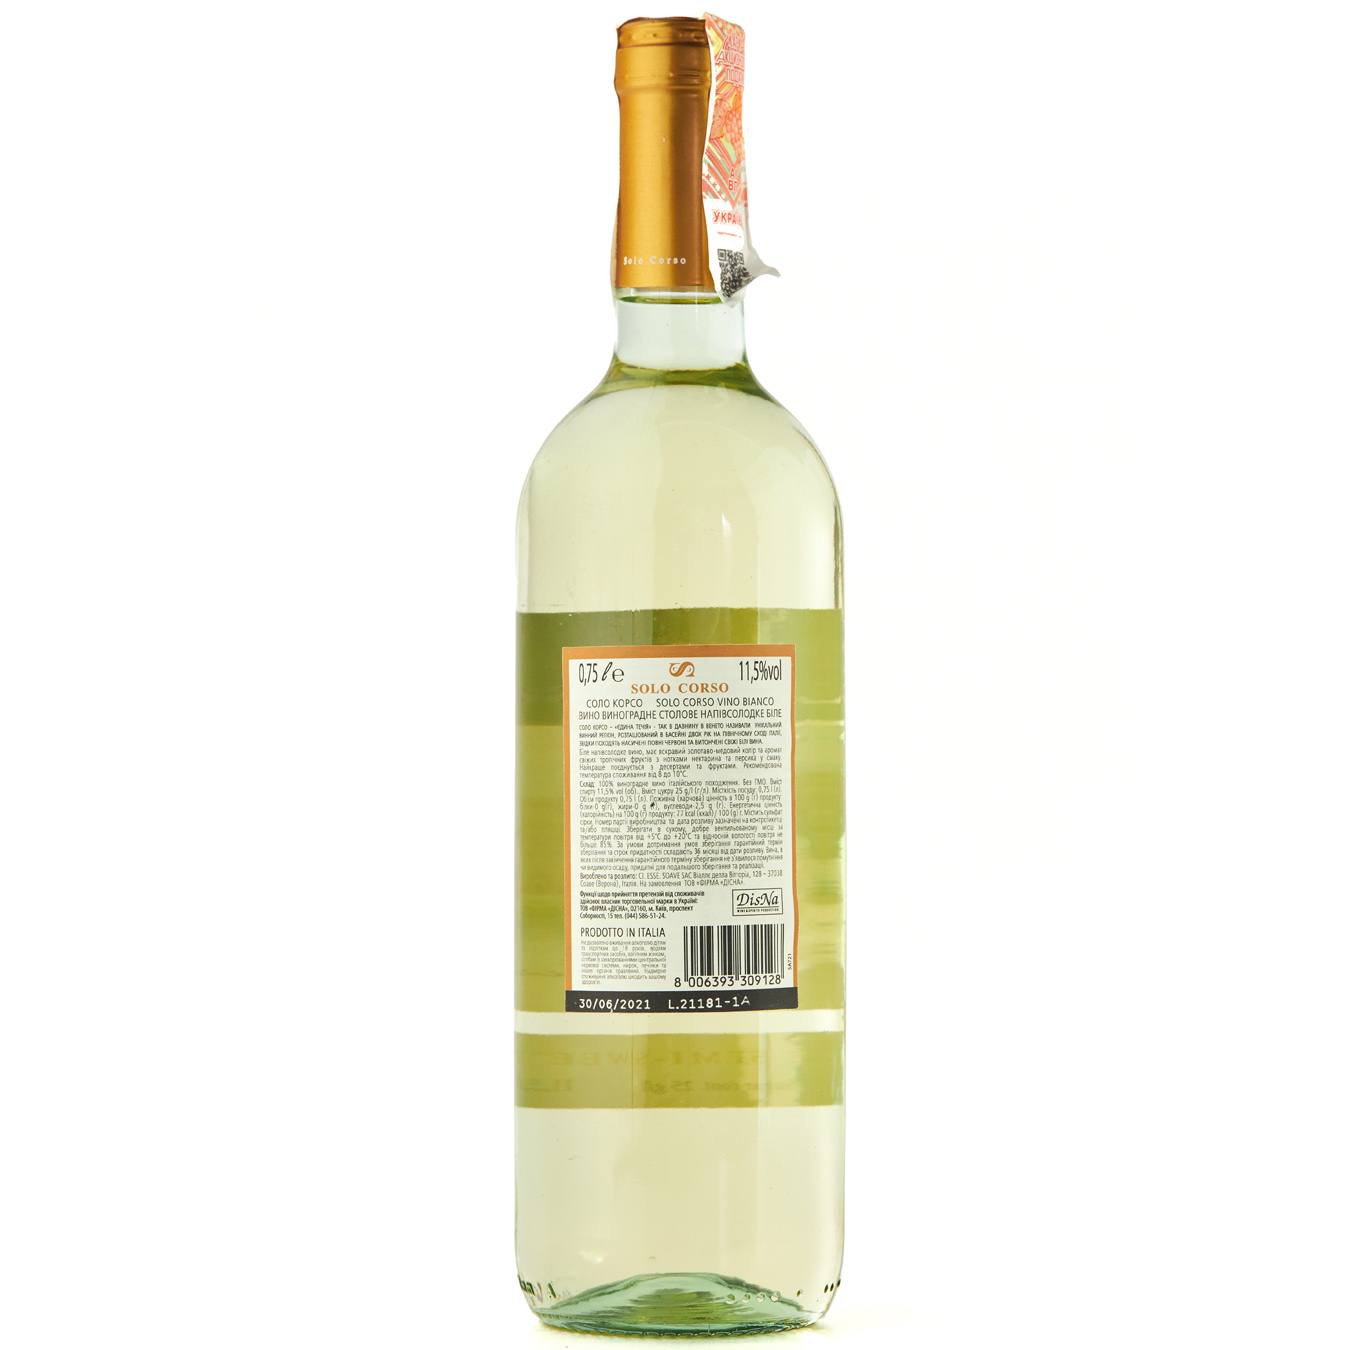 Wine Solo Corso white semi-sweet 11,5% 0,75l 2